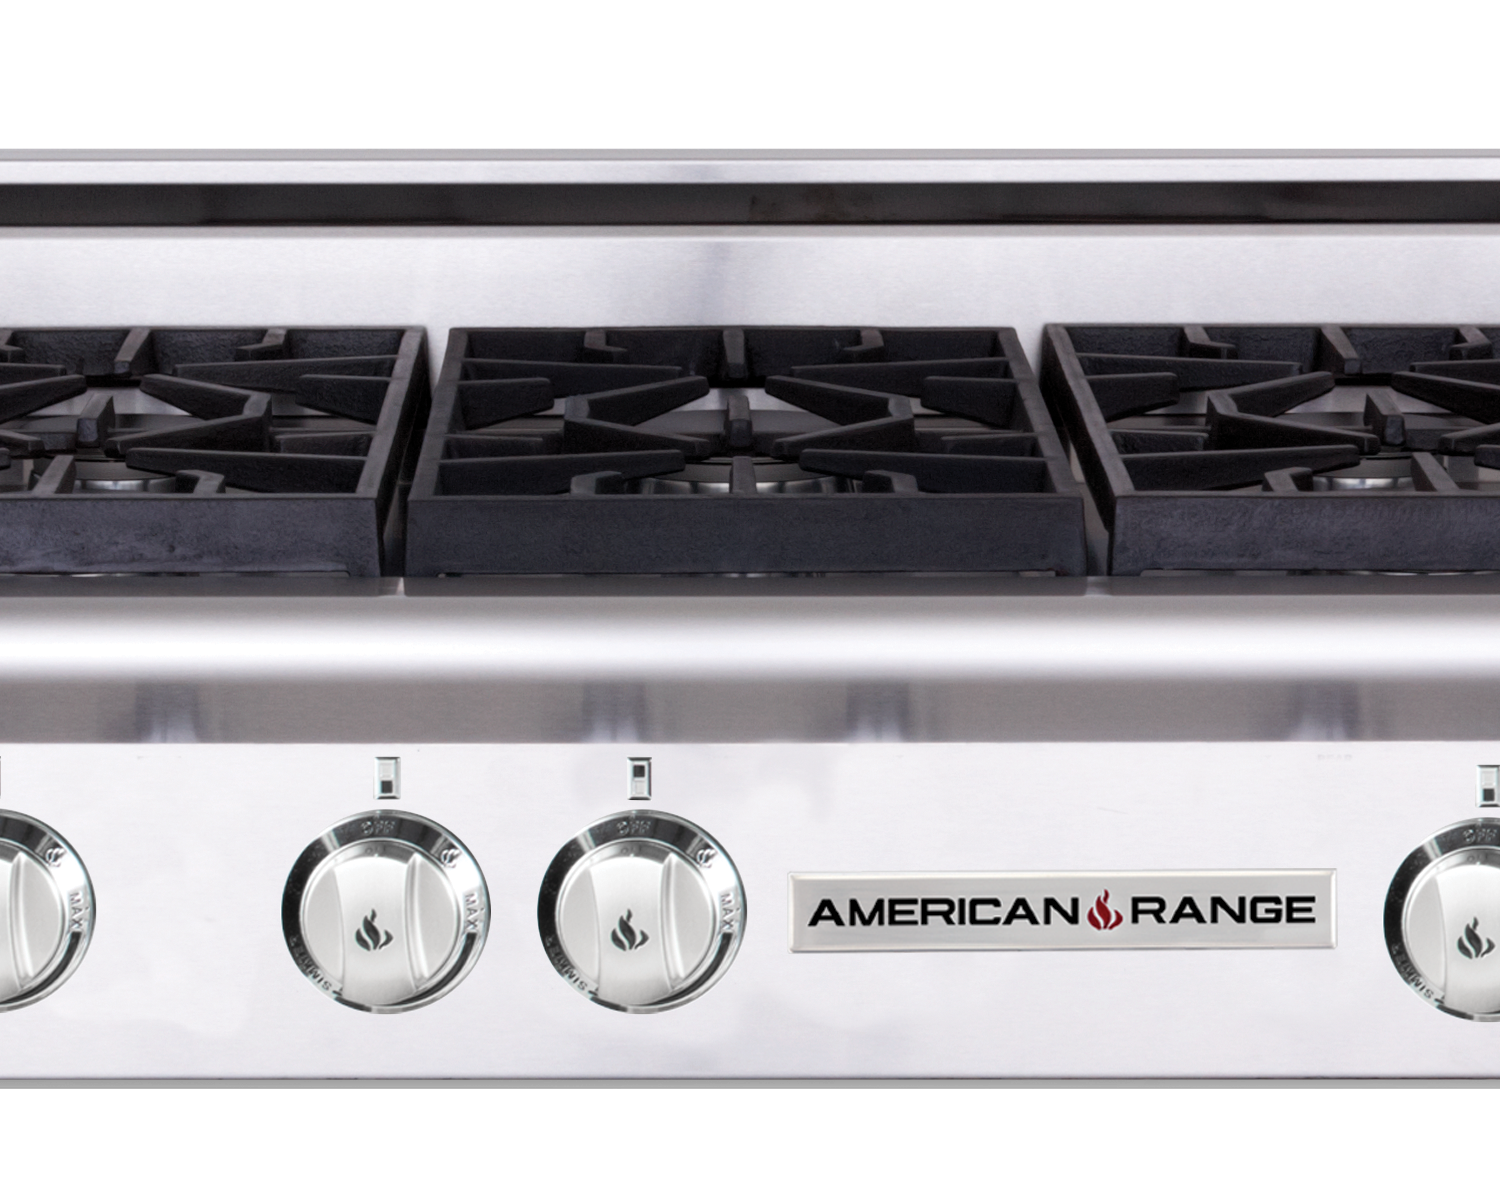 American Range 36-inch Americana Cuisine Burner